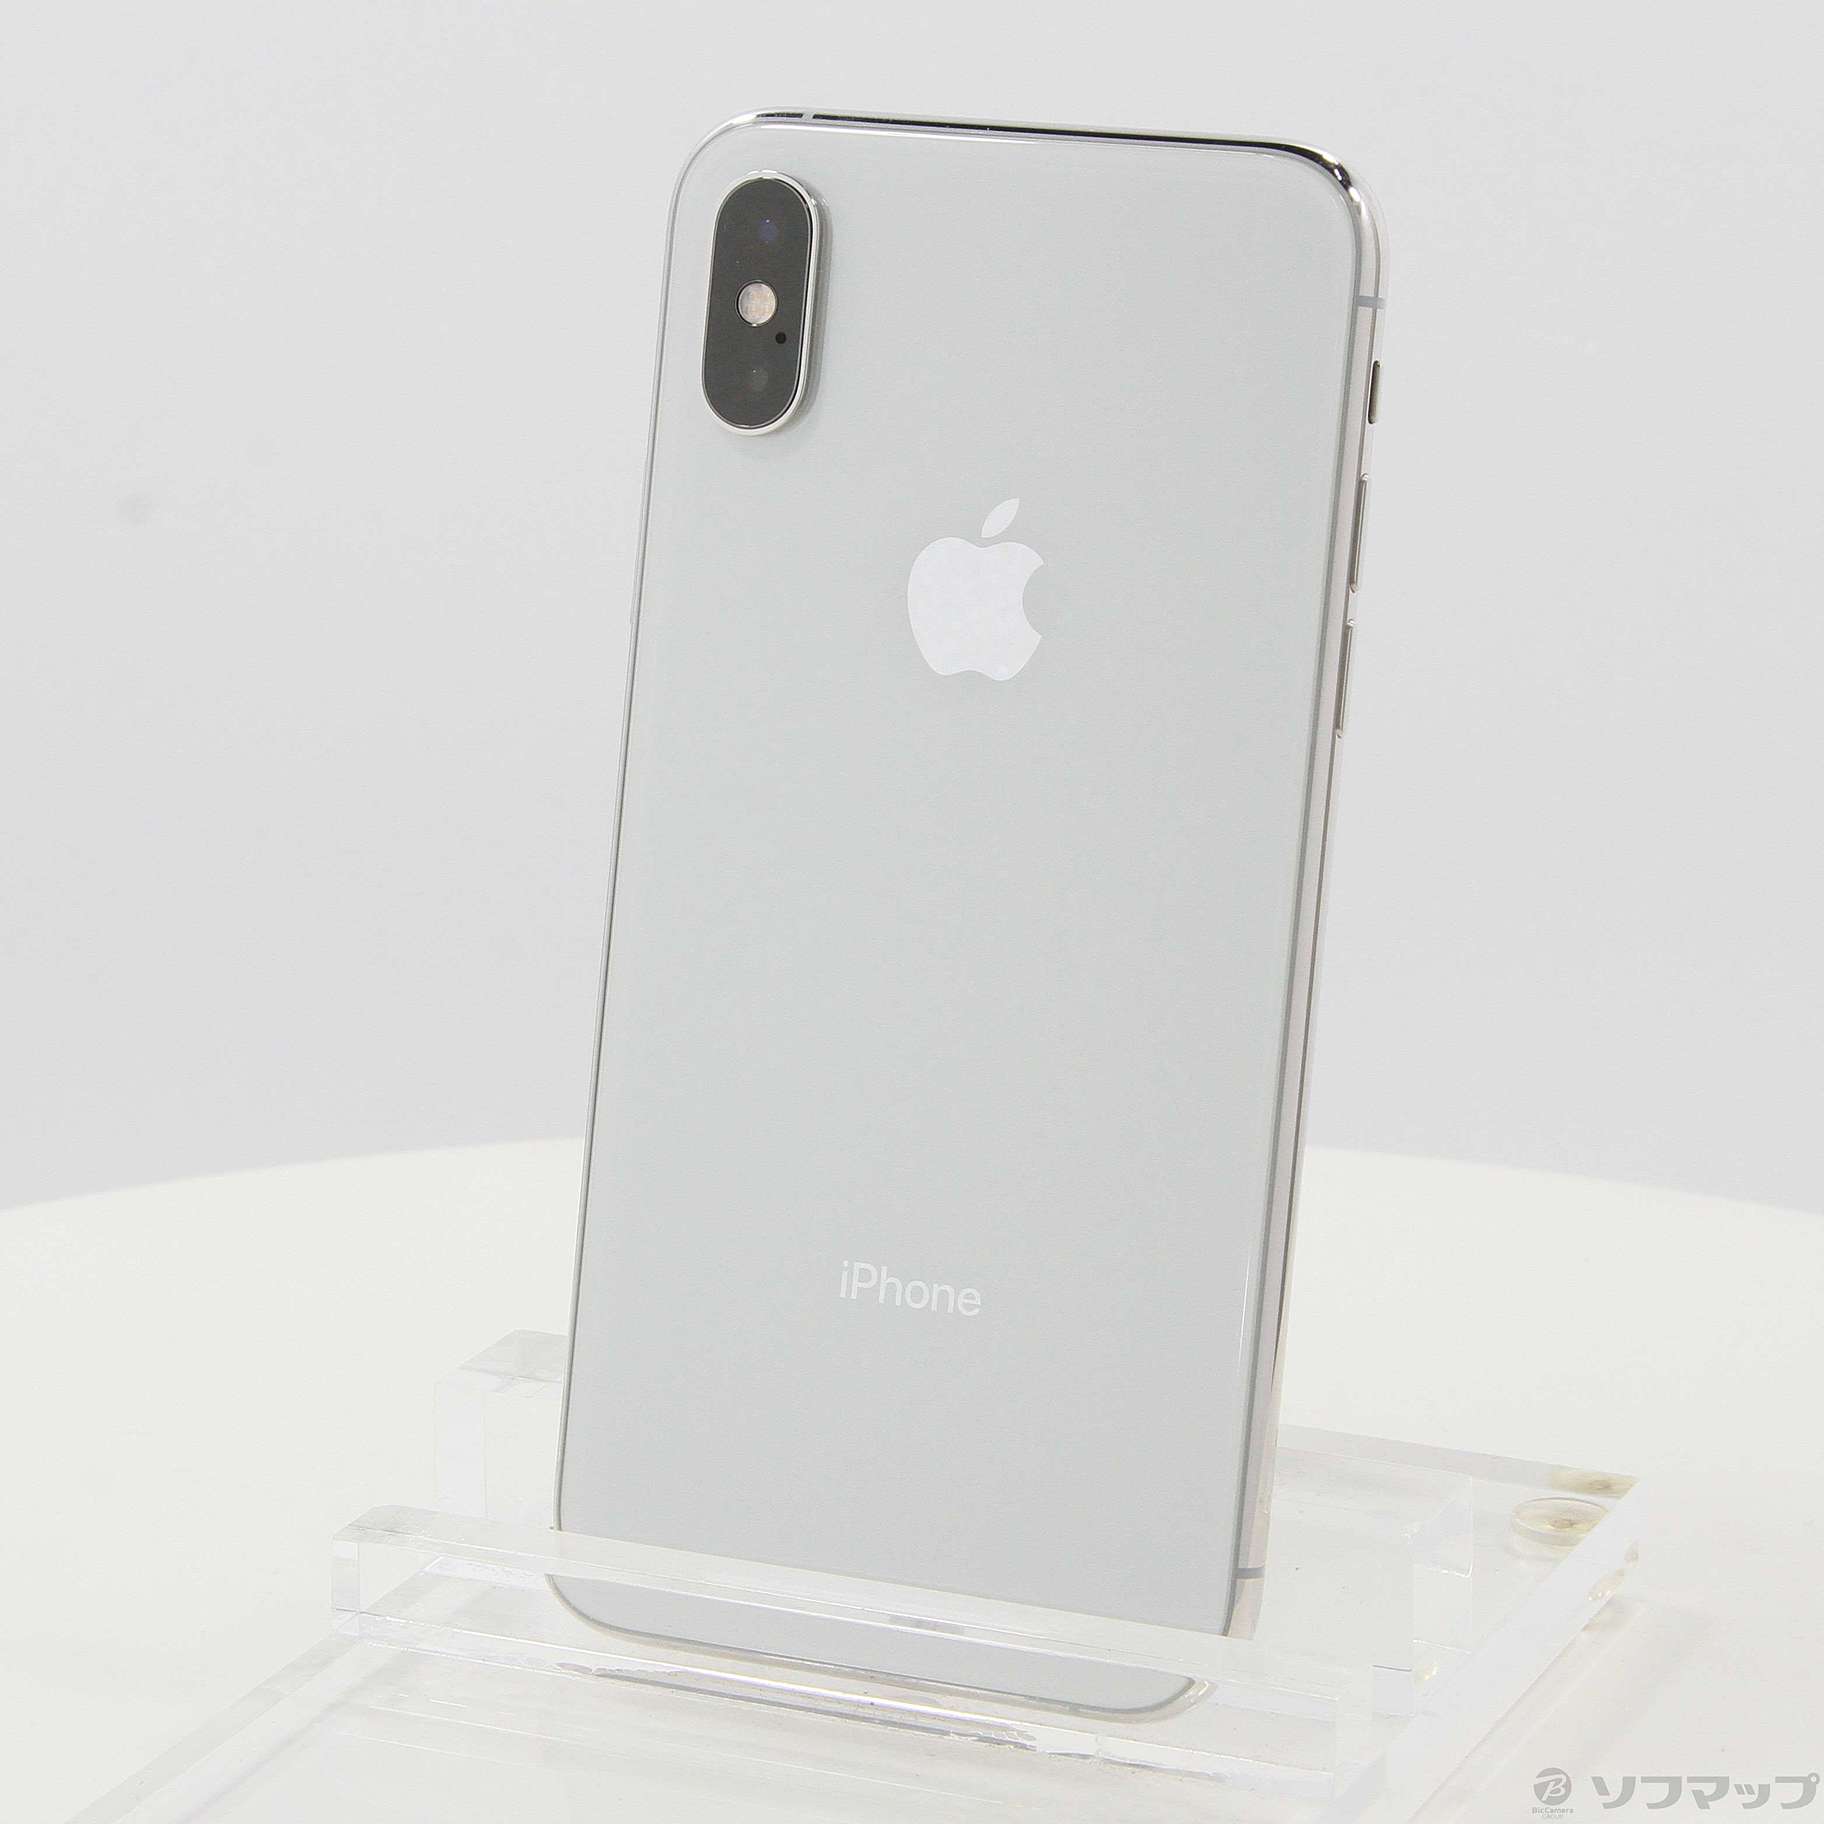 シルバーSIMフリーアップル iPhoneXS 256GB Silver - スマートフォン本体